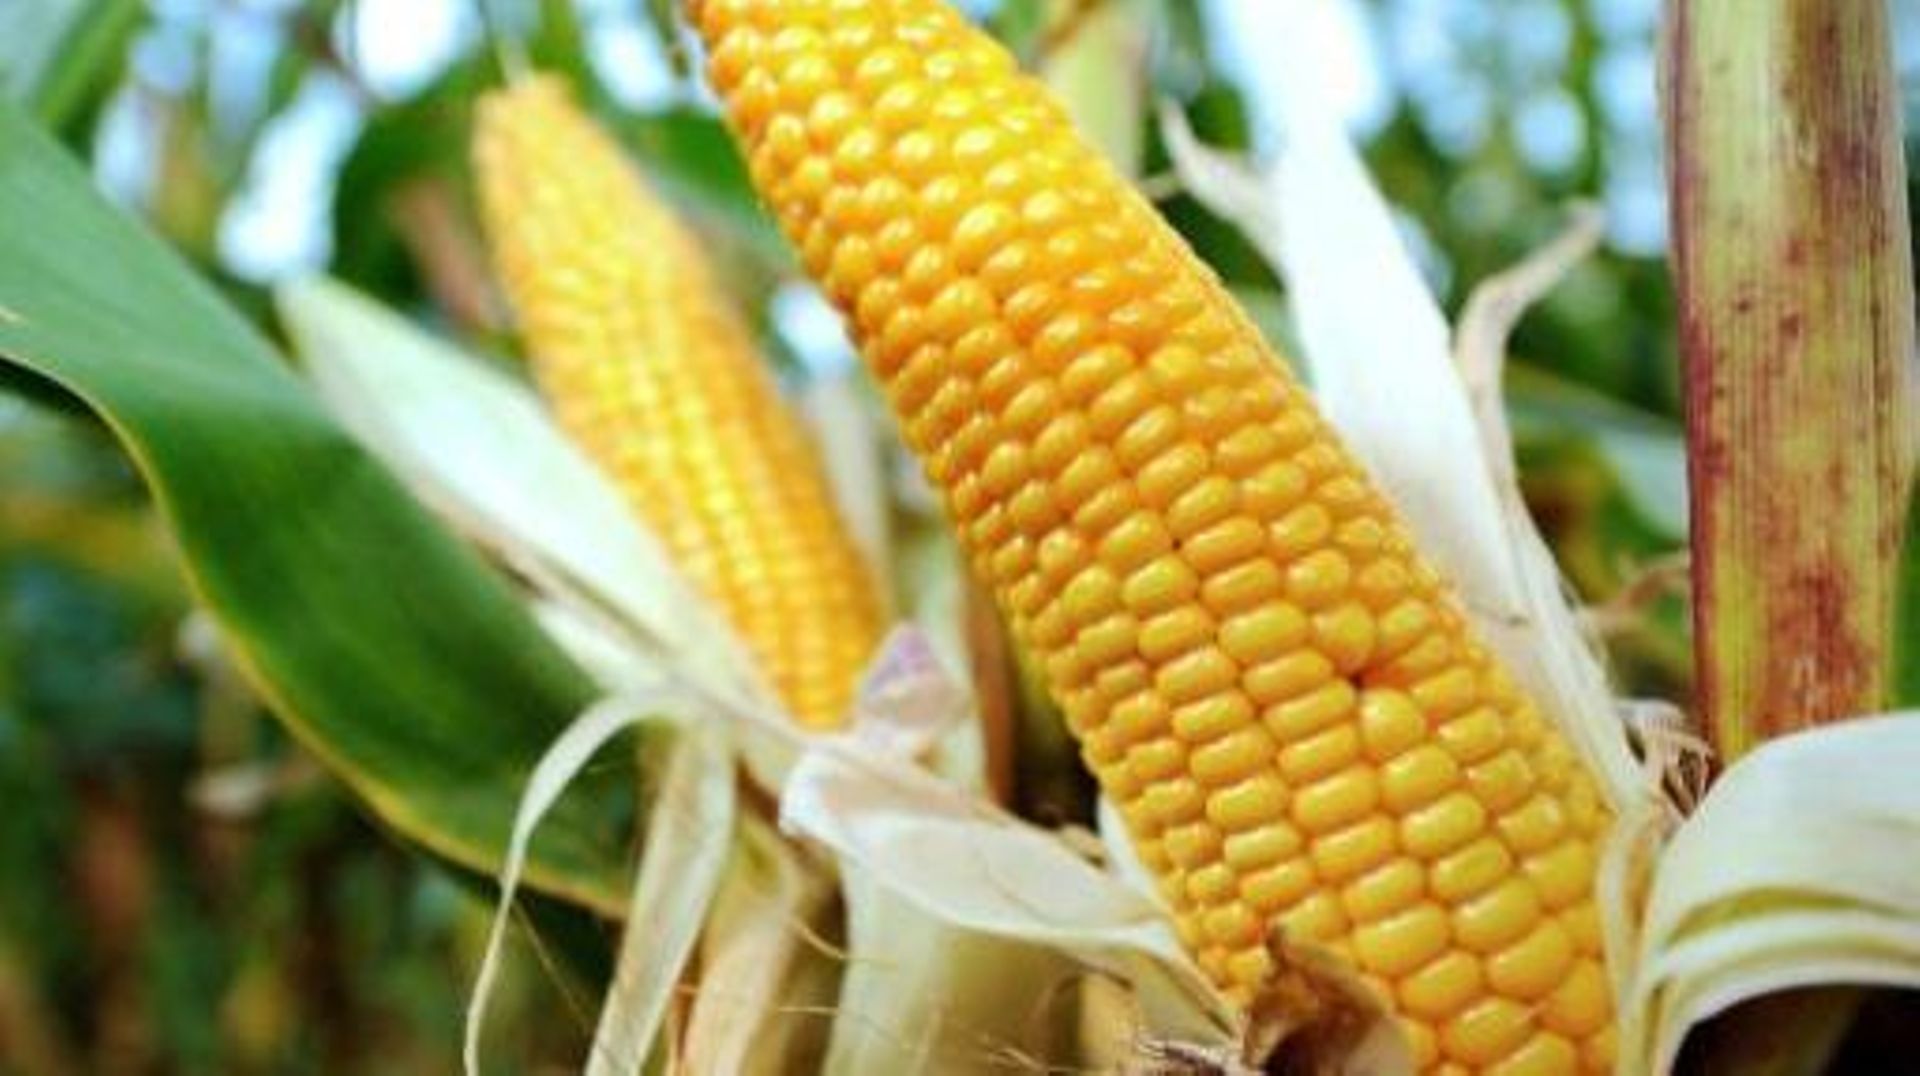 Le maïs MON810, sur lequel se cristallisent bien des débats autour des OGM